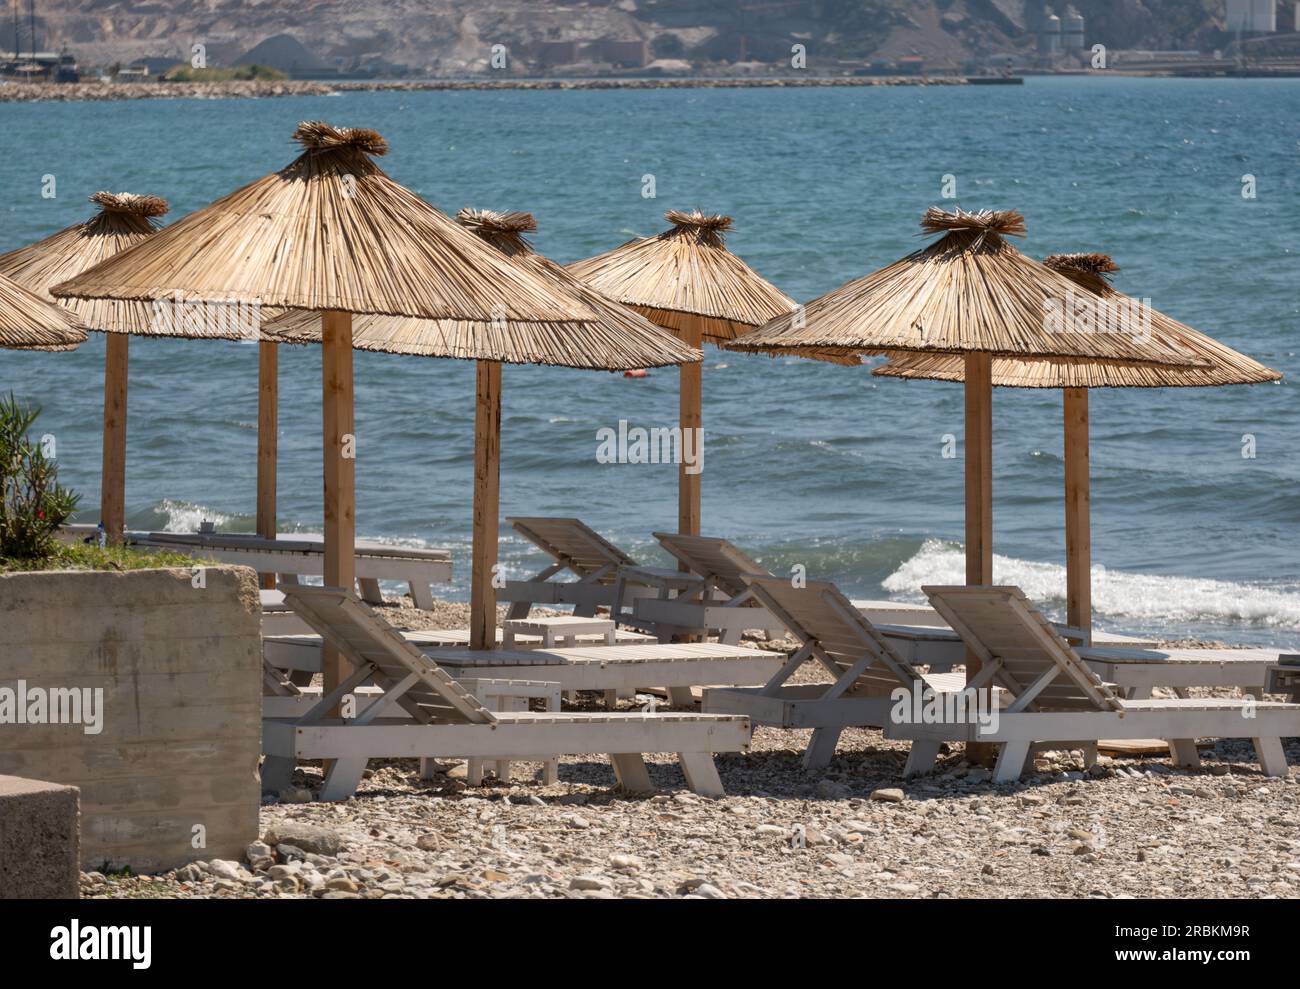 Stagione turistica. Posti a sedere vuoti sulla spiaggia sotto un ombrellone. Il mare senza persone sullo sfondo Foto Stock